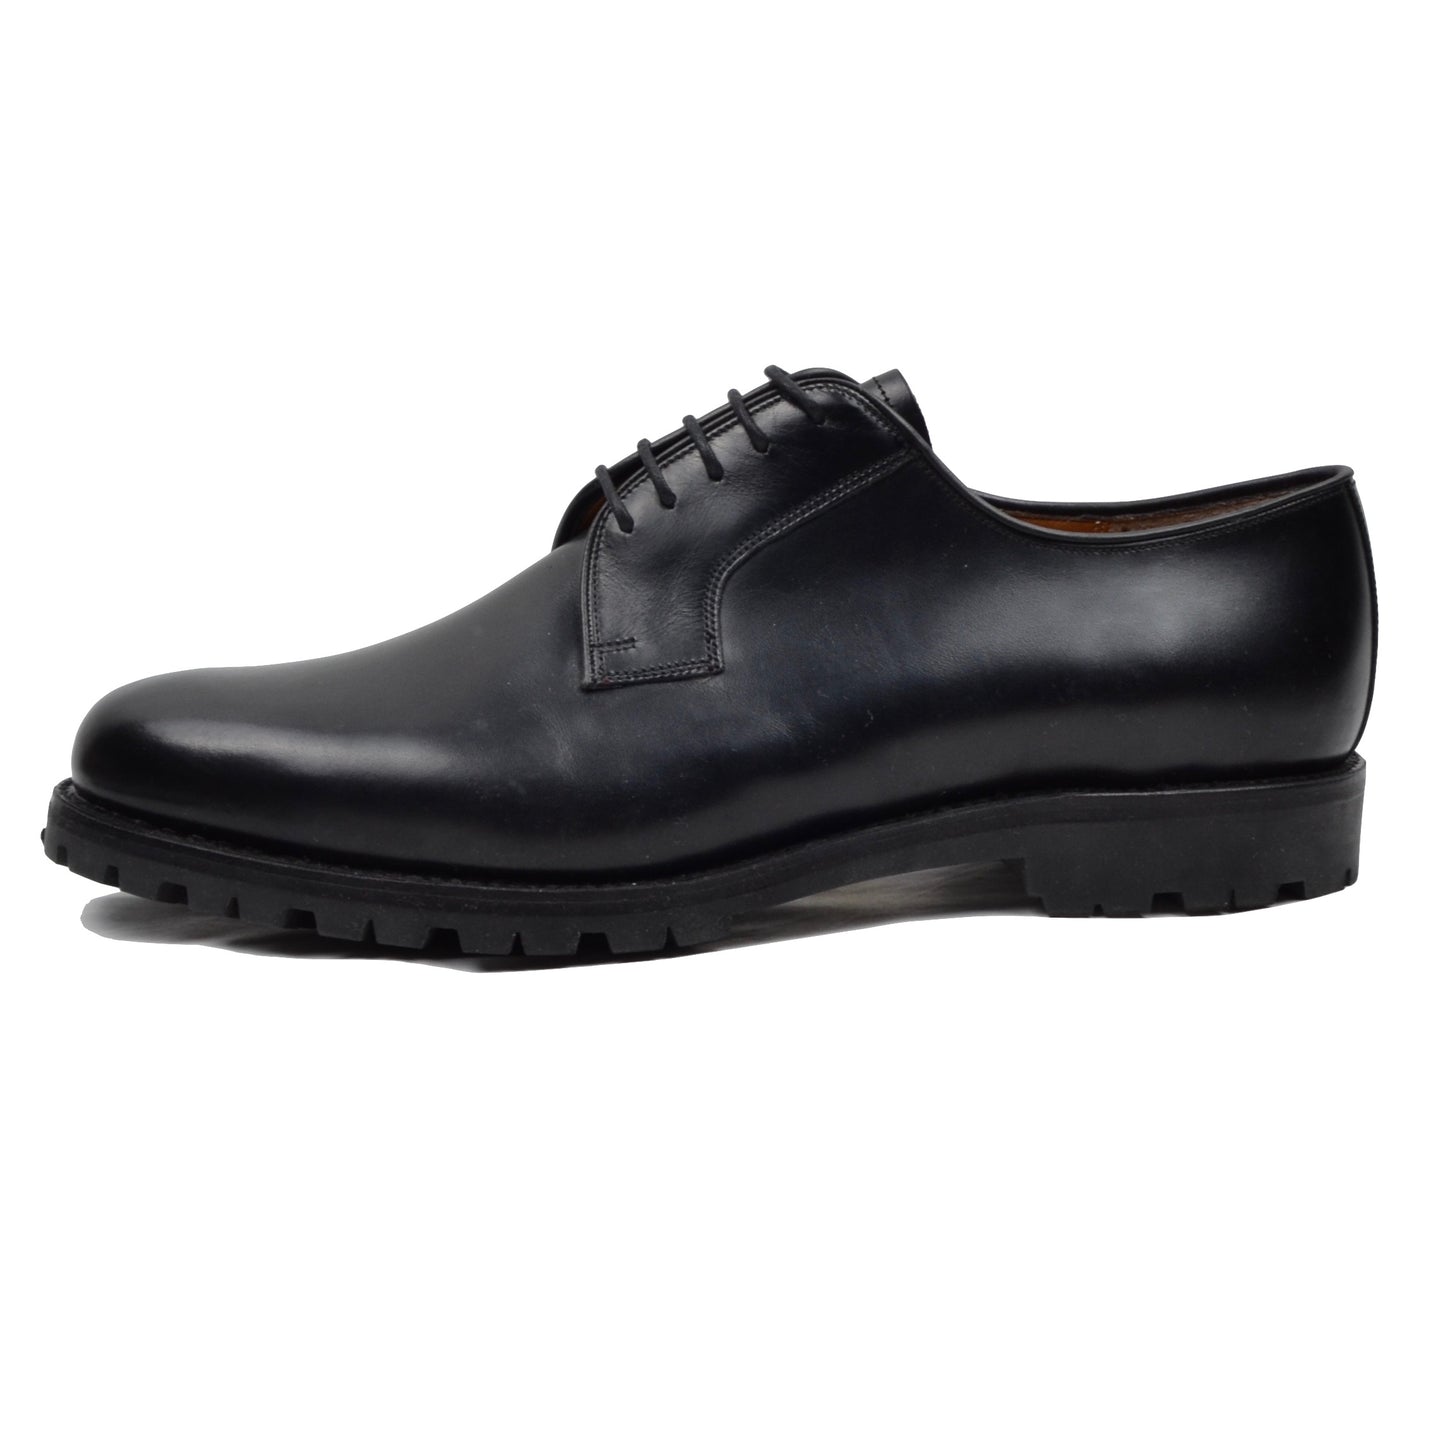 Barker England Shoes Size 10 F Wide - Black